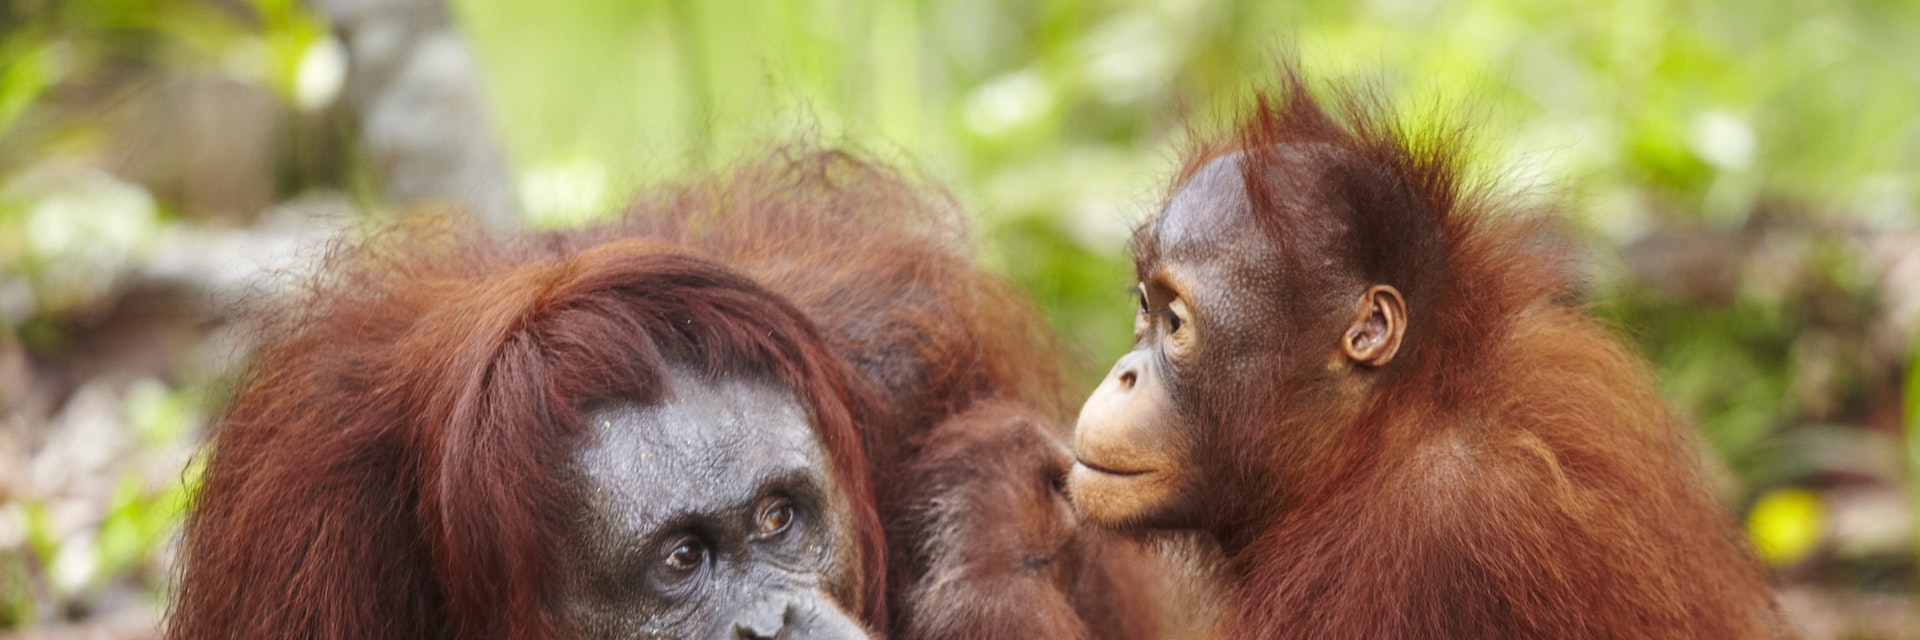 Orangutans at Semenggoh Wildlife Centre.